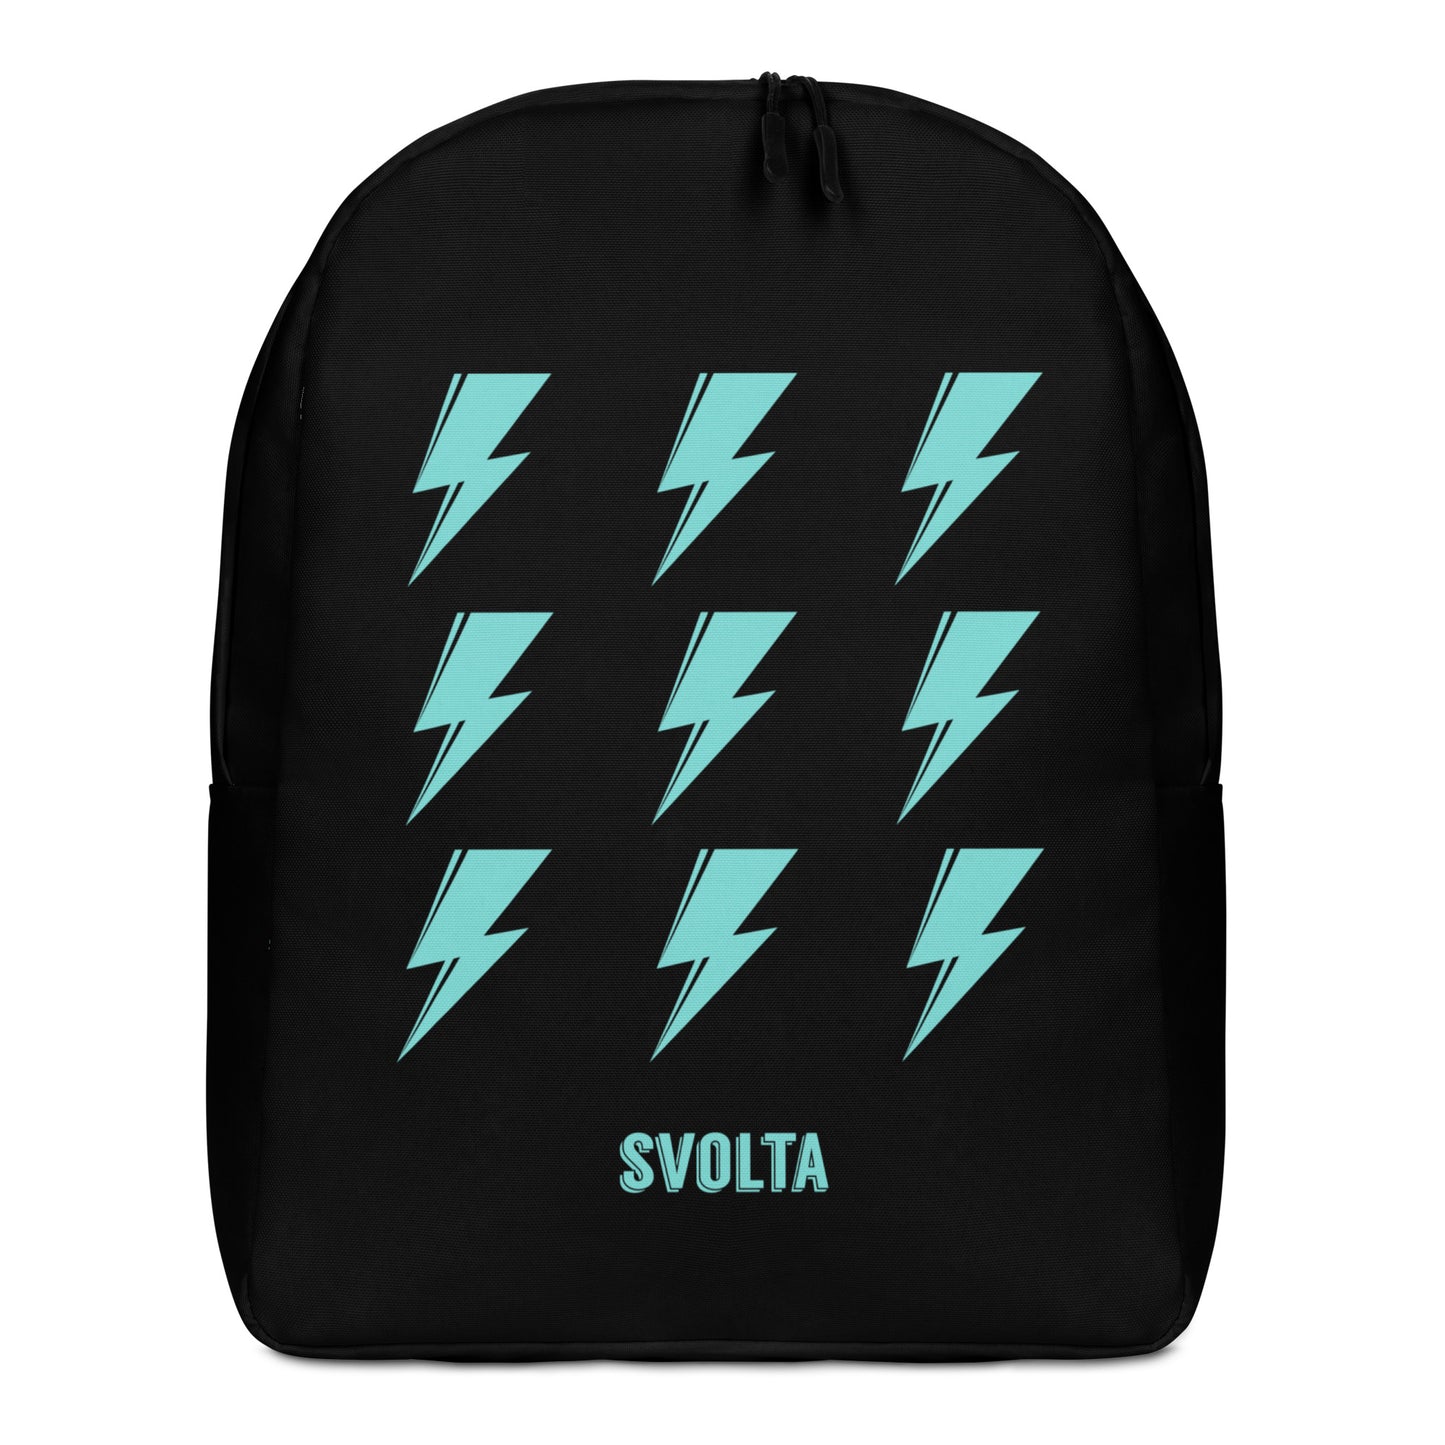 SVOLTA 9 Bolts Minimalist Backpack - Black and Aqua